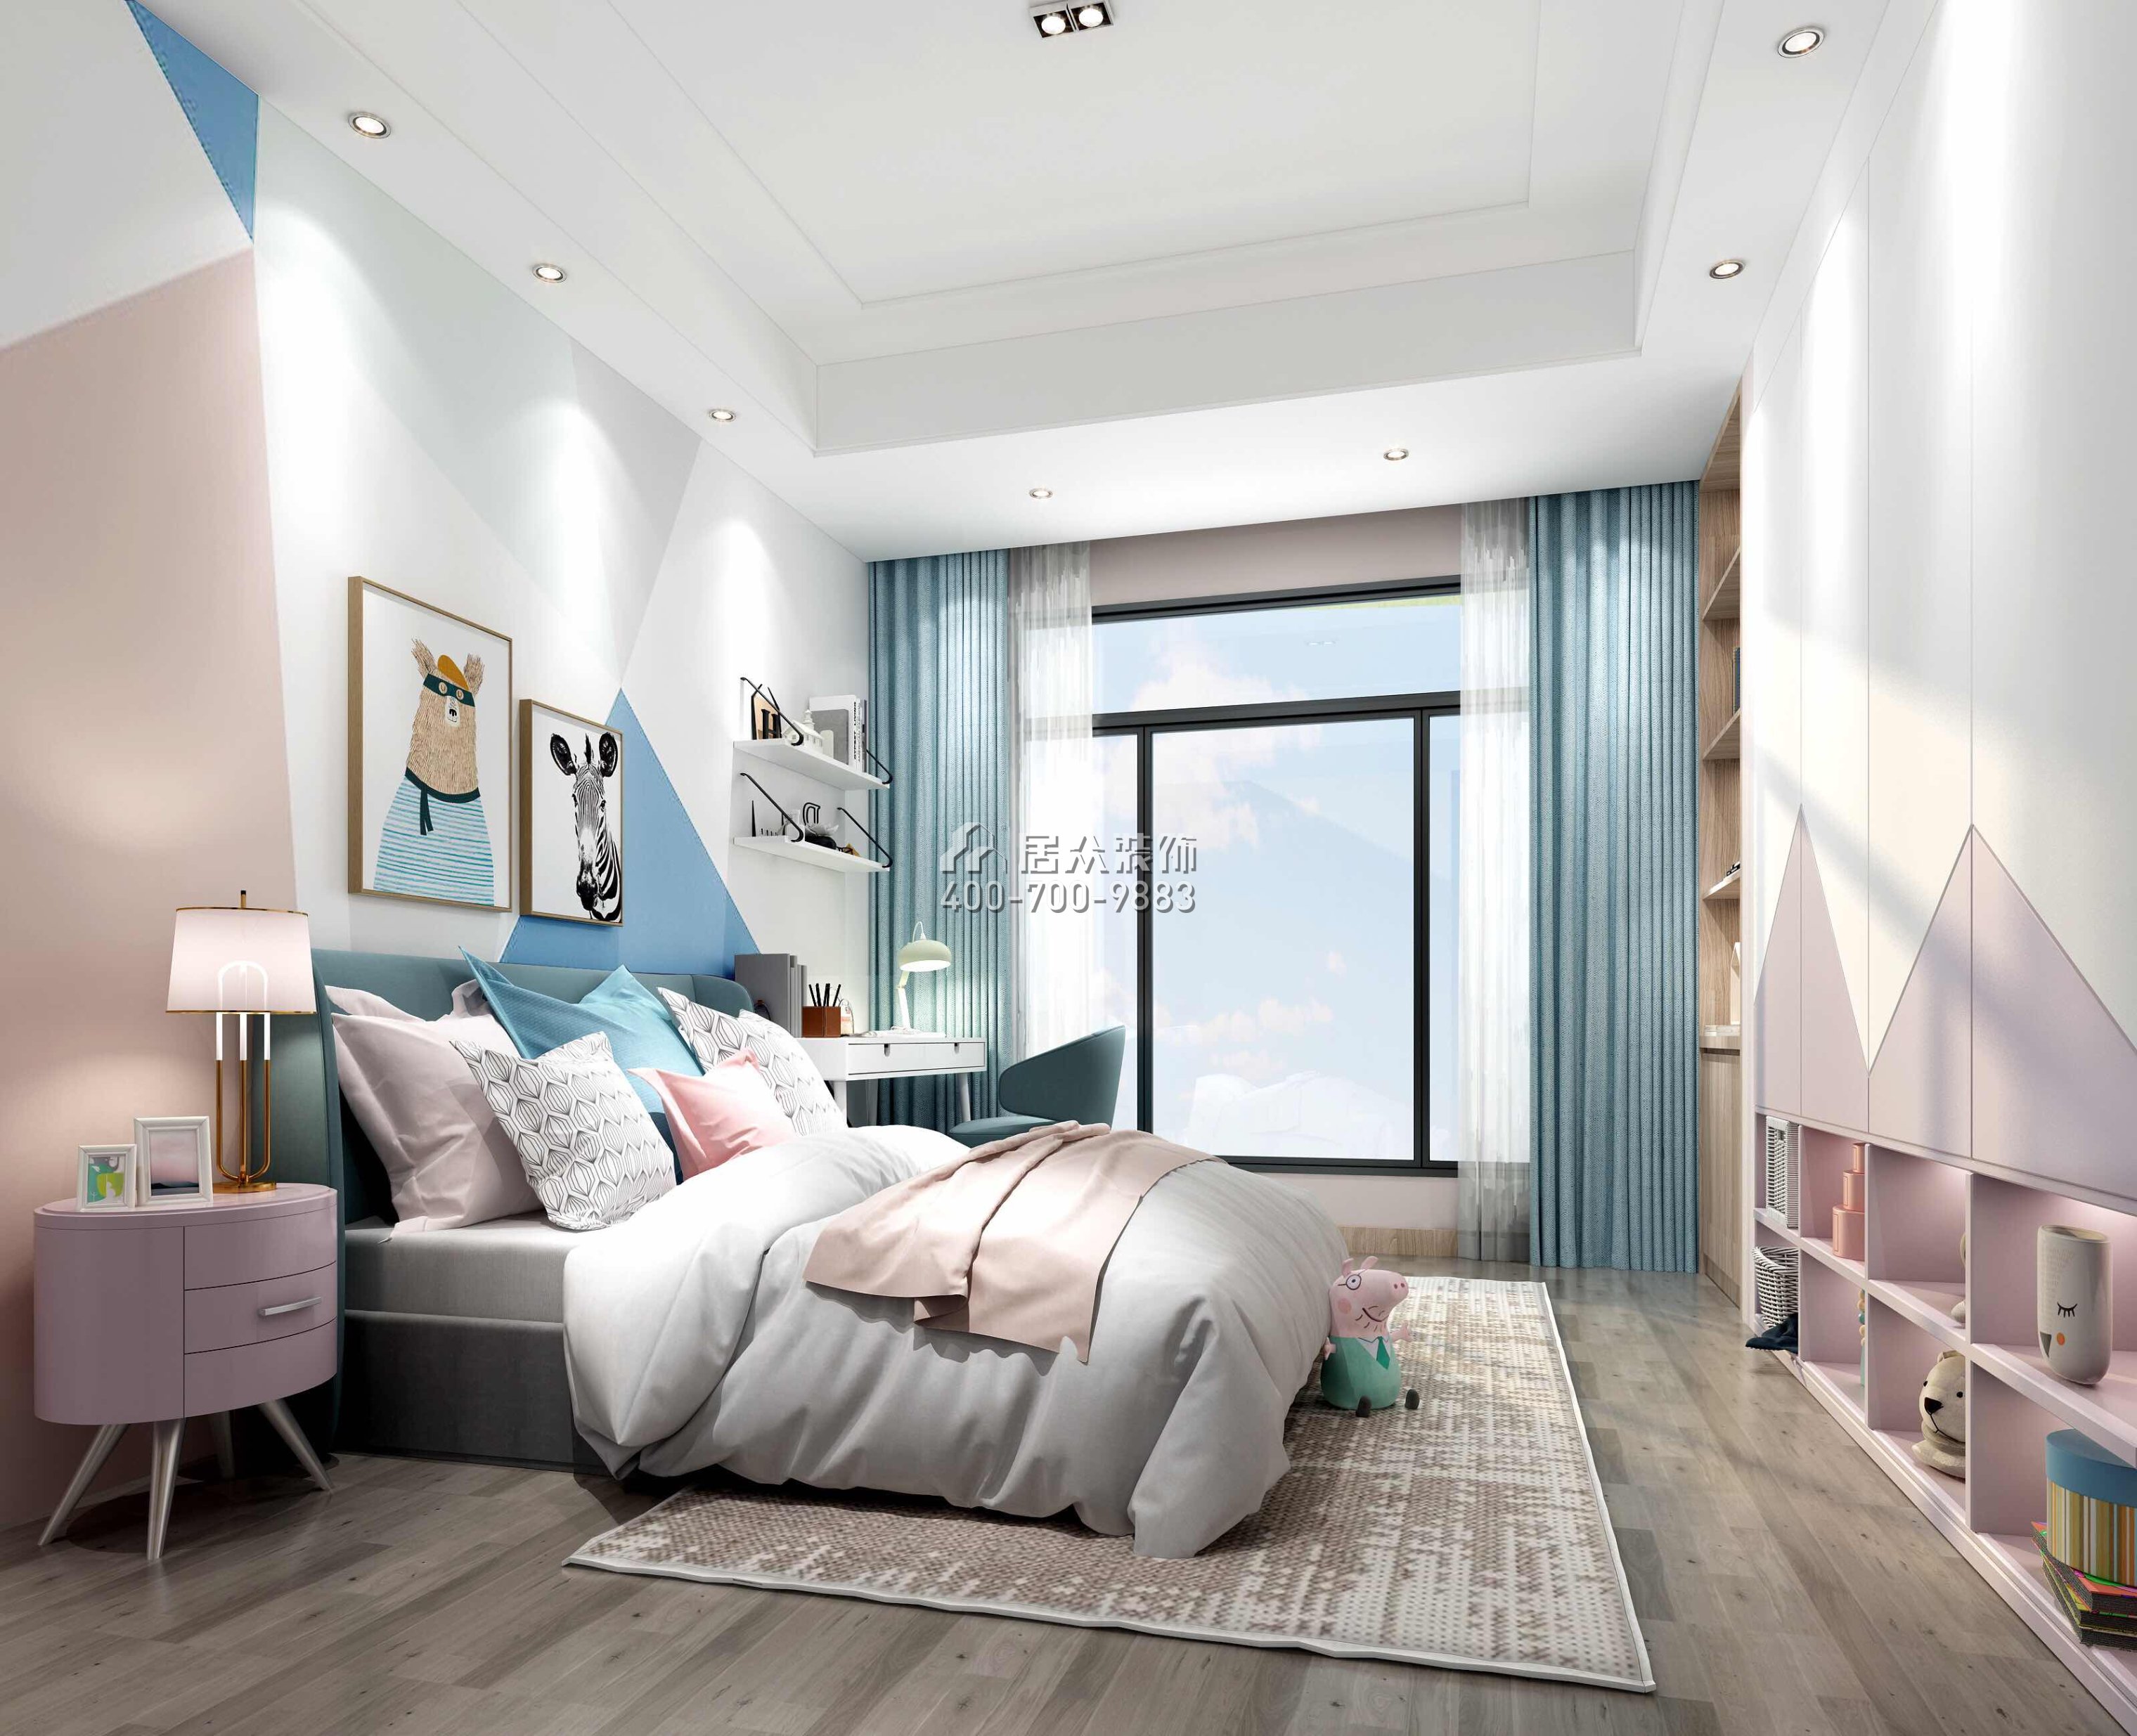 丰泰观山420平方米现代简约风格别墅户型卧室装修效果图